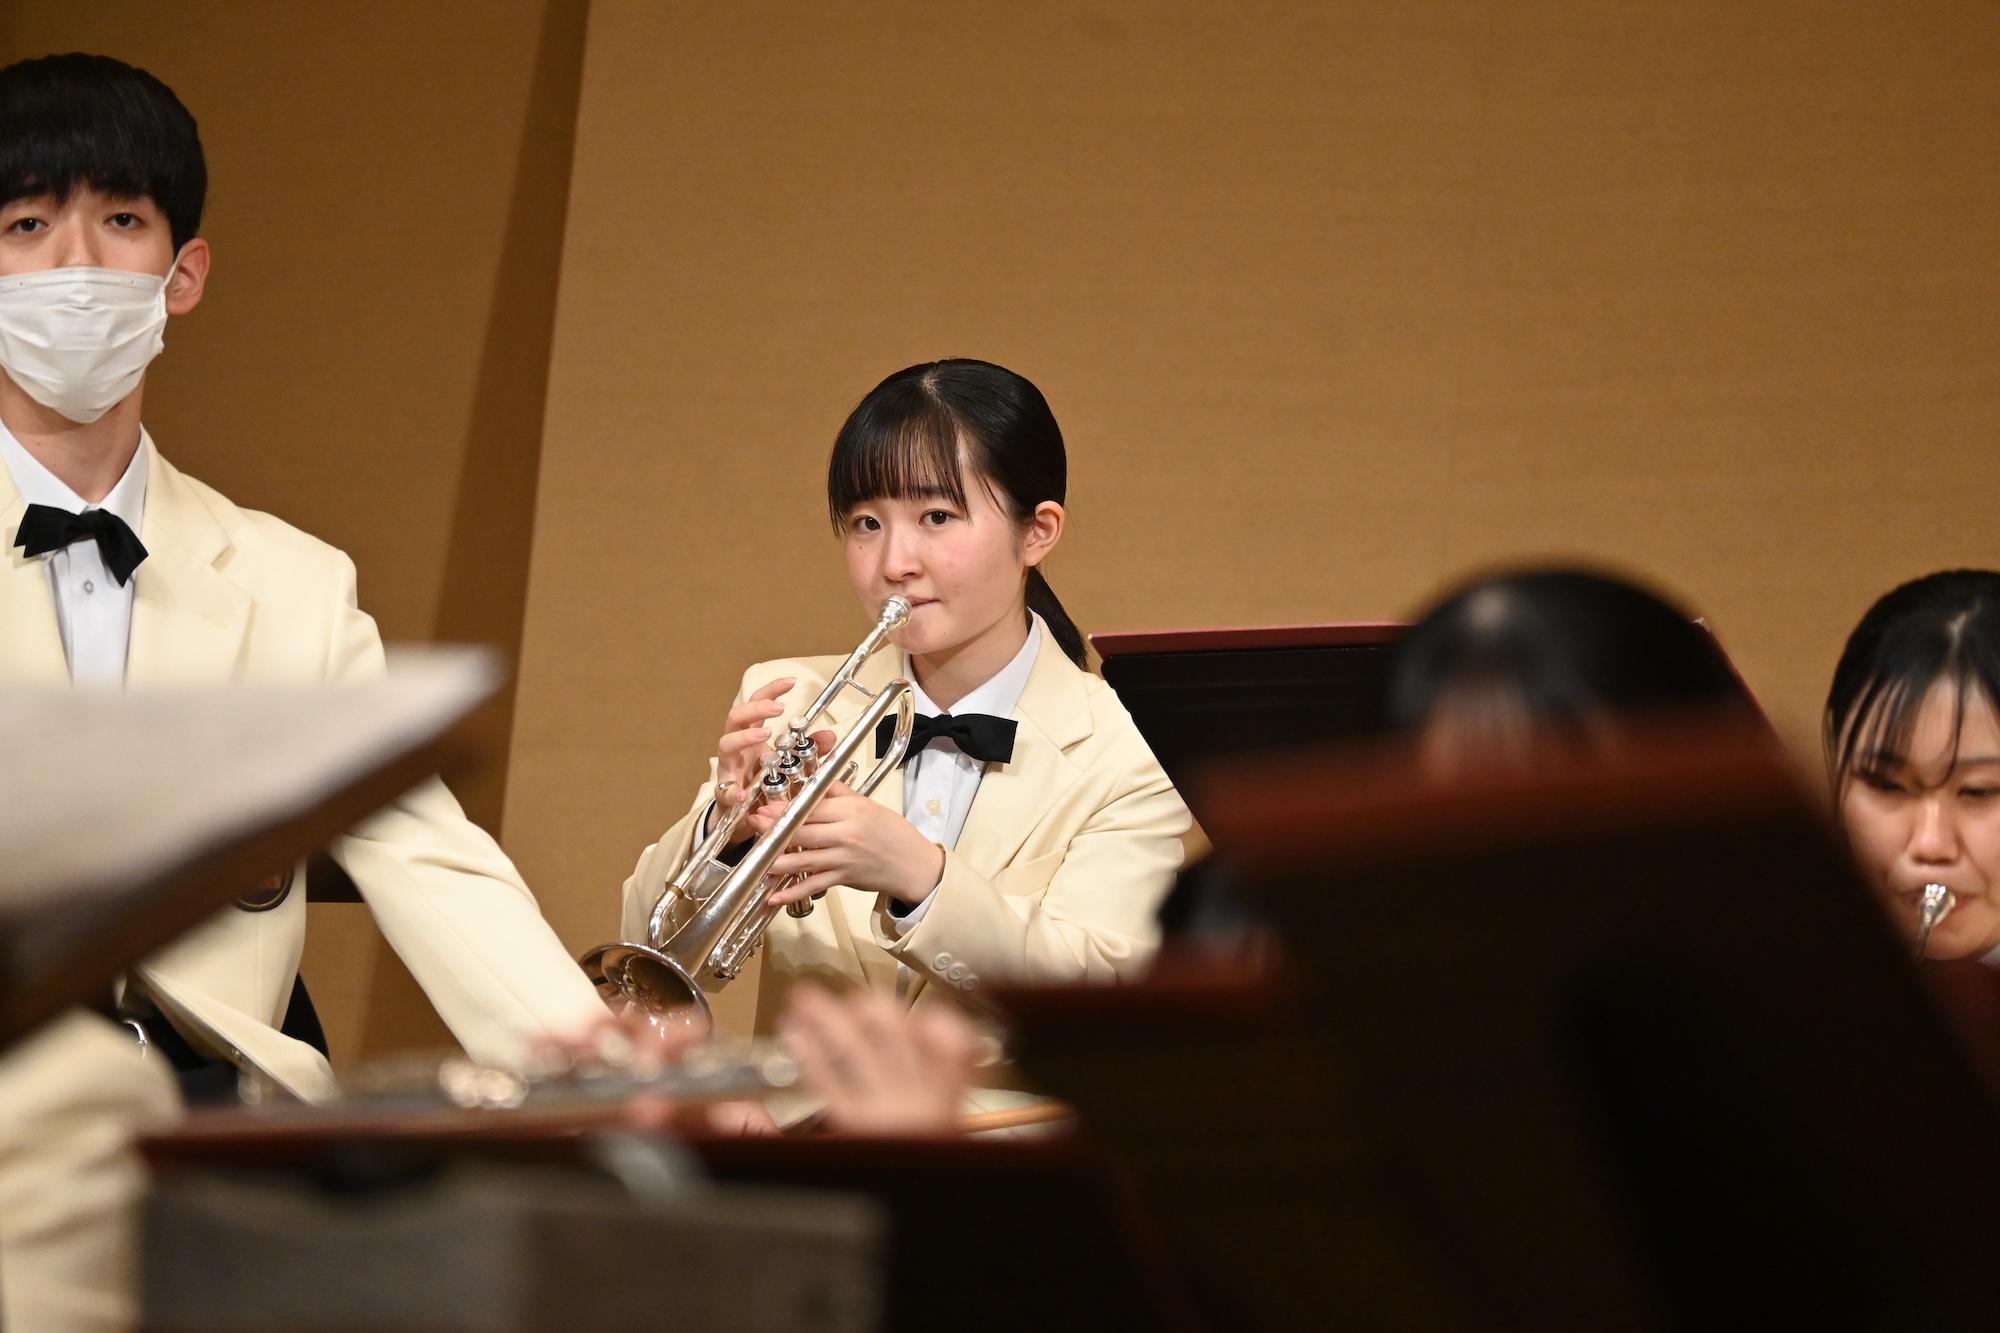 吹奏楽全国大会、コロナで17人欠場の名門・秋田南高校に起こった悲劇と奇跡 | Business Insider Japan